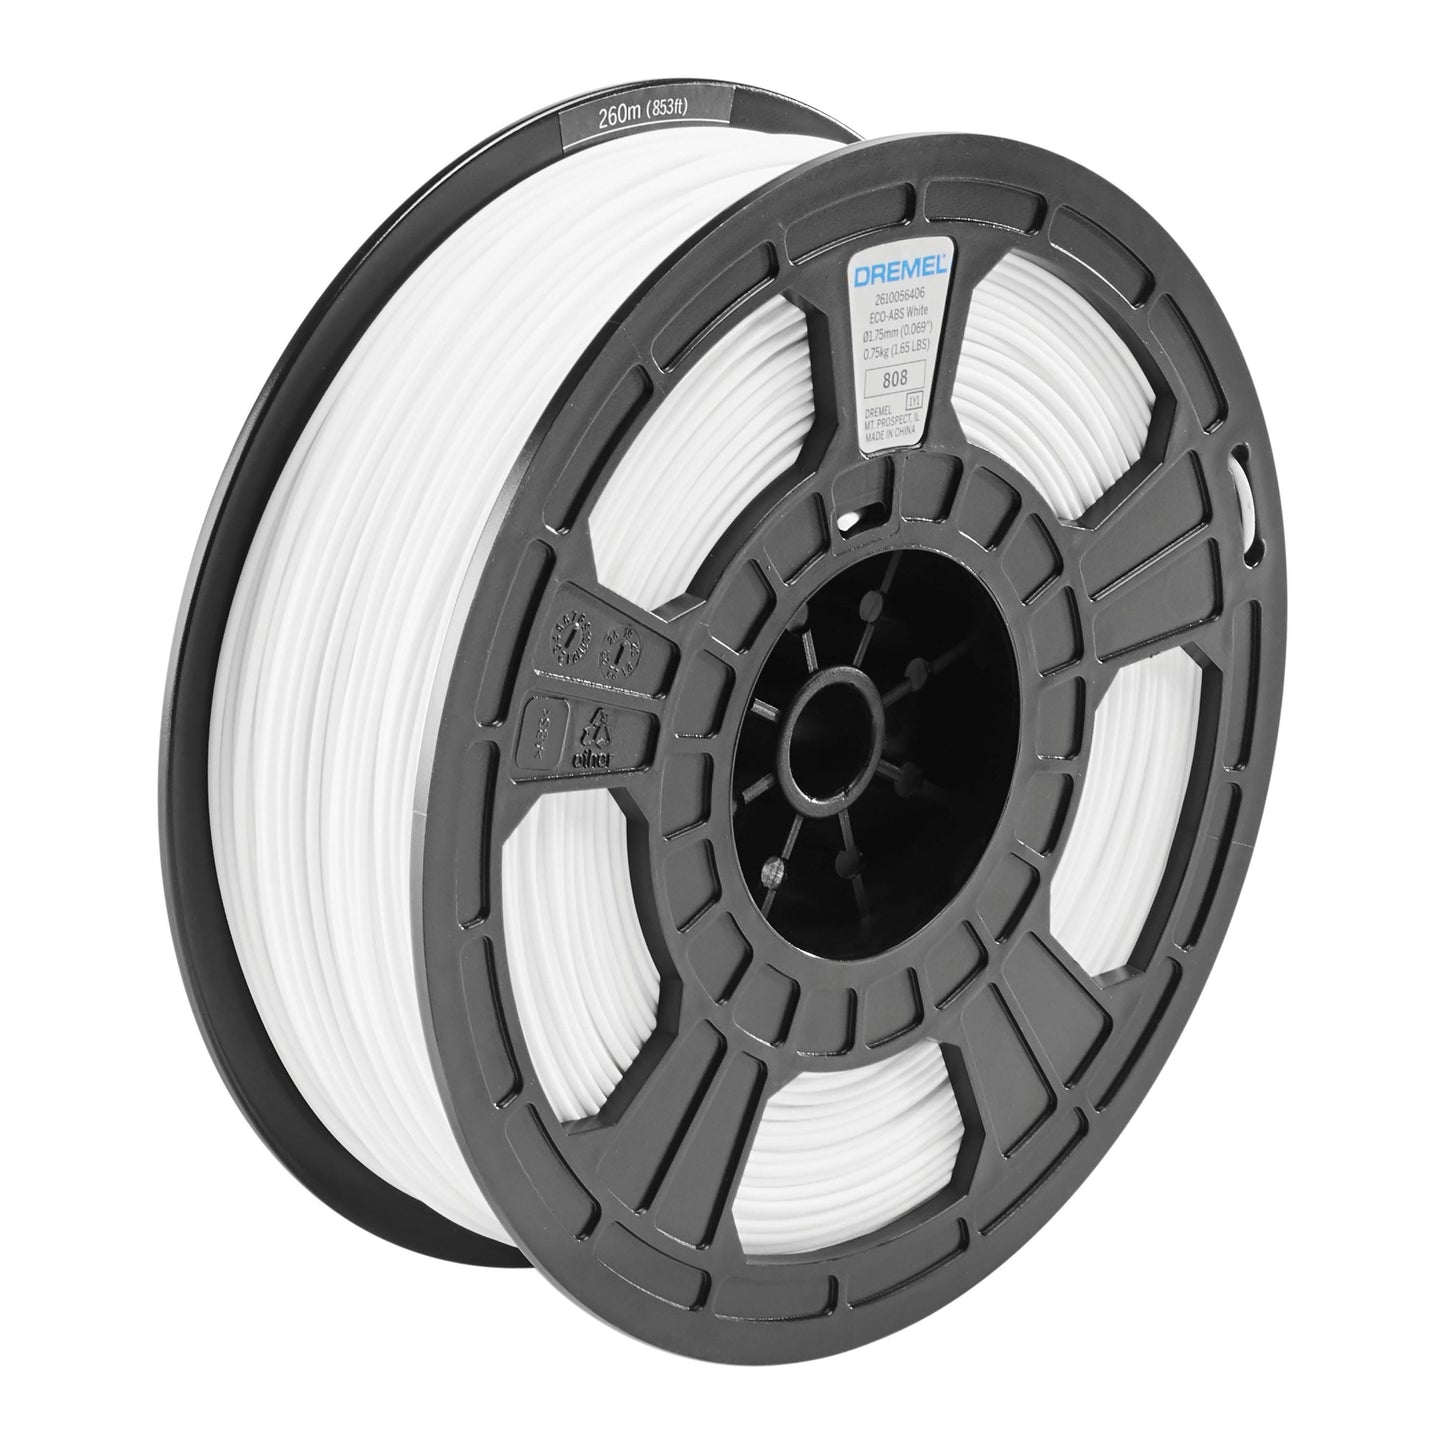 3D ECO-ABS Filament Spool, 1.75mm Diameter, 0.75kg - 3PI Tech Solutions